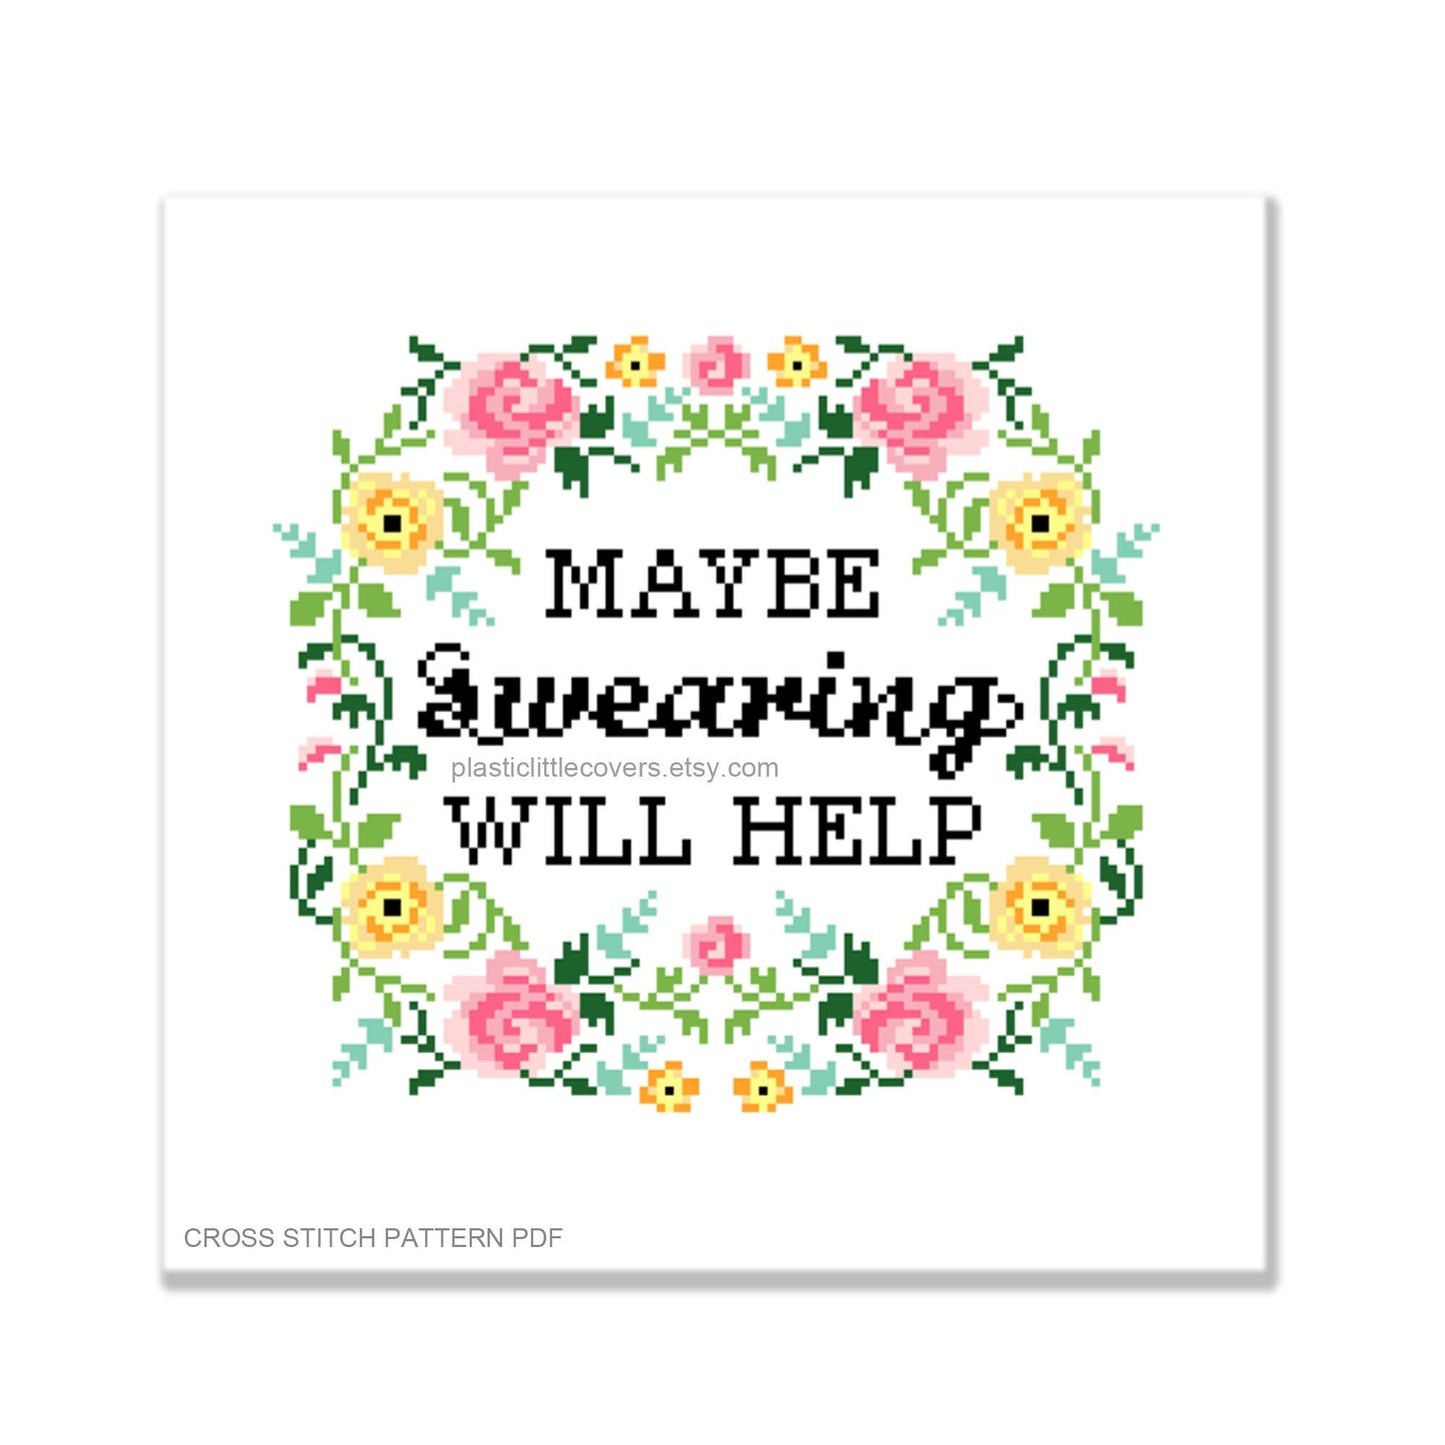 Maybe Swearing Will Help - Cross Stitch Pattern PDF.